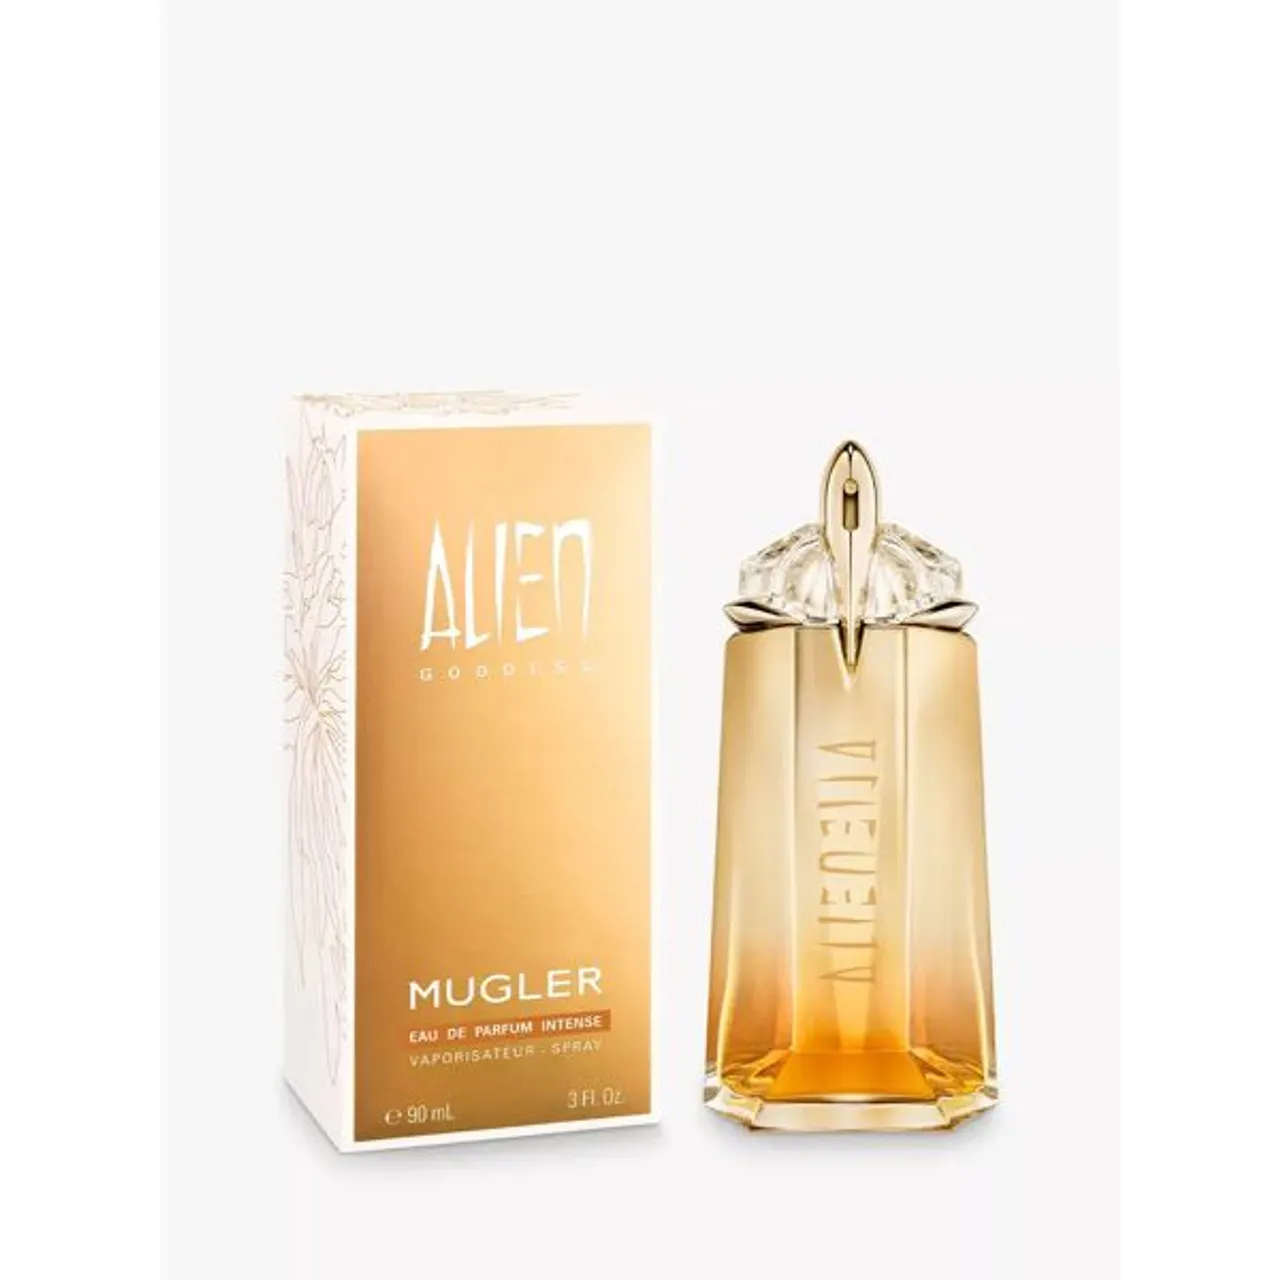 Mugler Alien Goddess Eau de Parfum Intense - Female - Size: 90ml